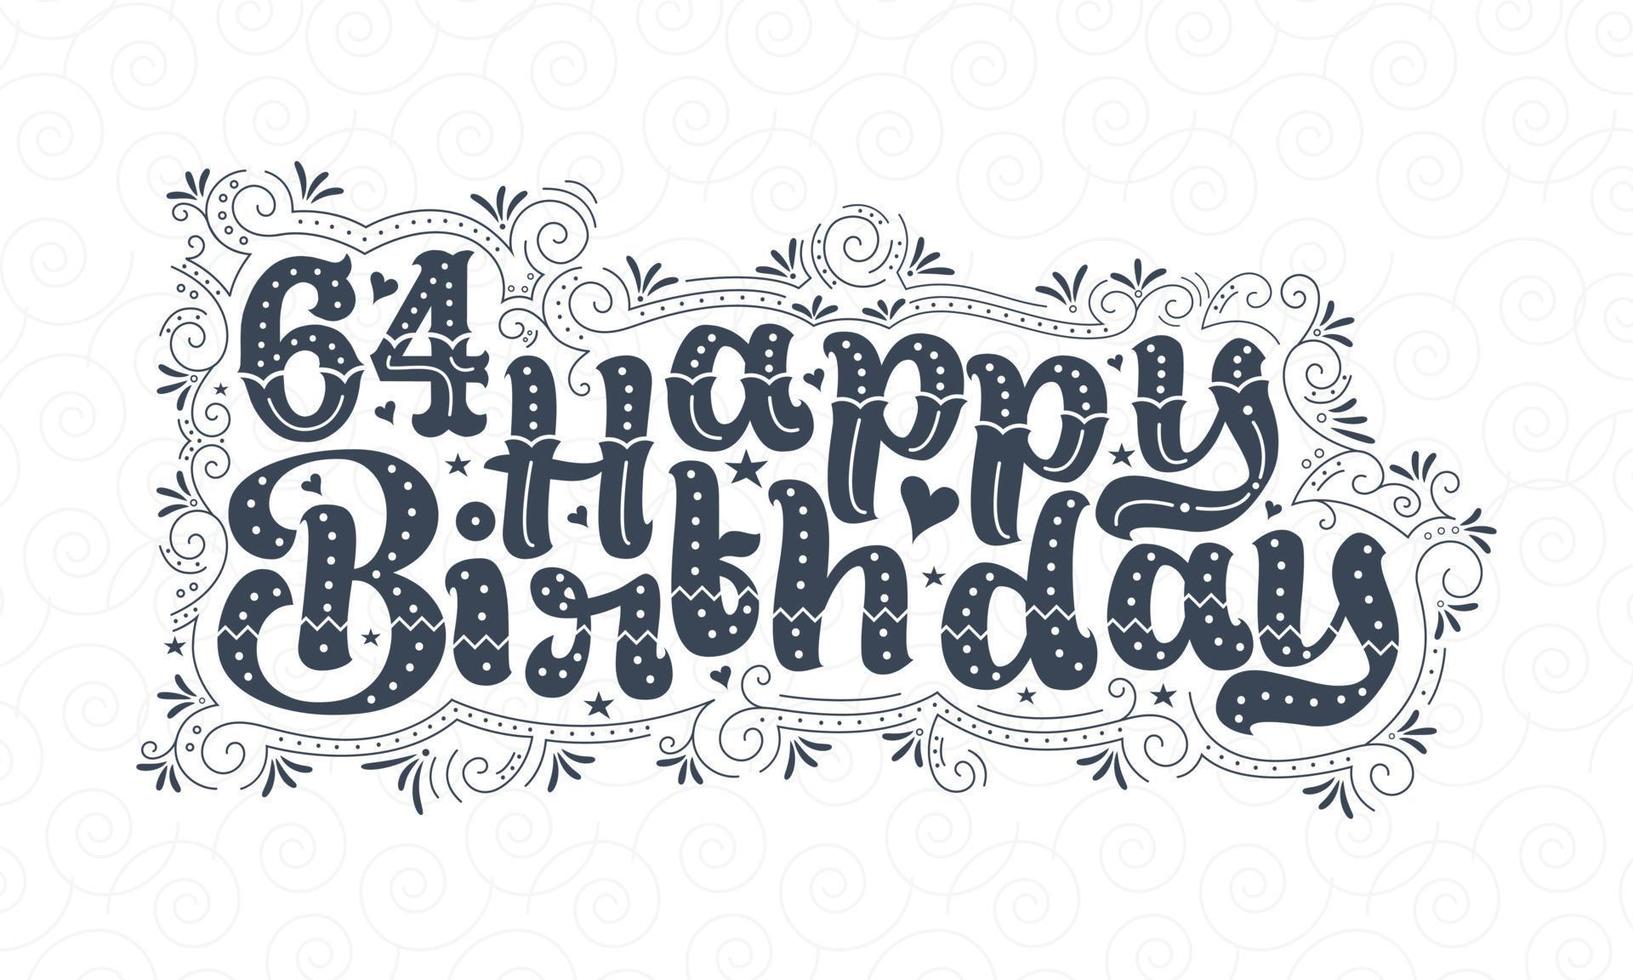 64a scritta di buon compleanno, bellissimo design tipografico di 64 anni di compleanno con punti, linee e foglie. vettore